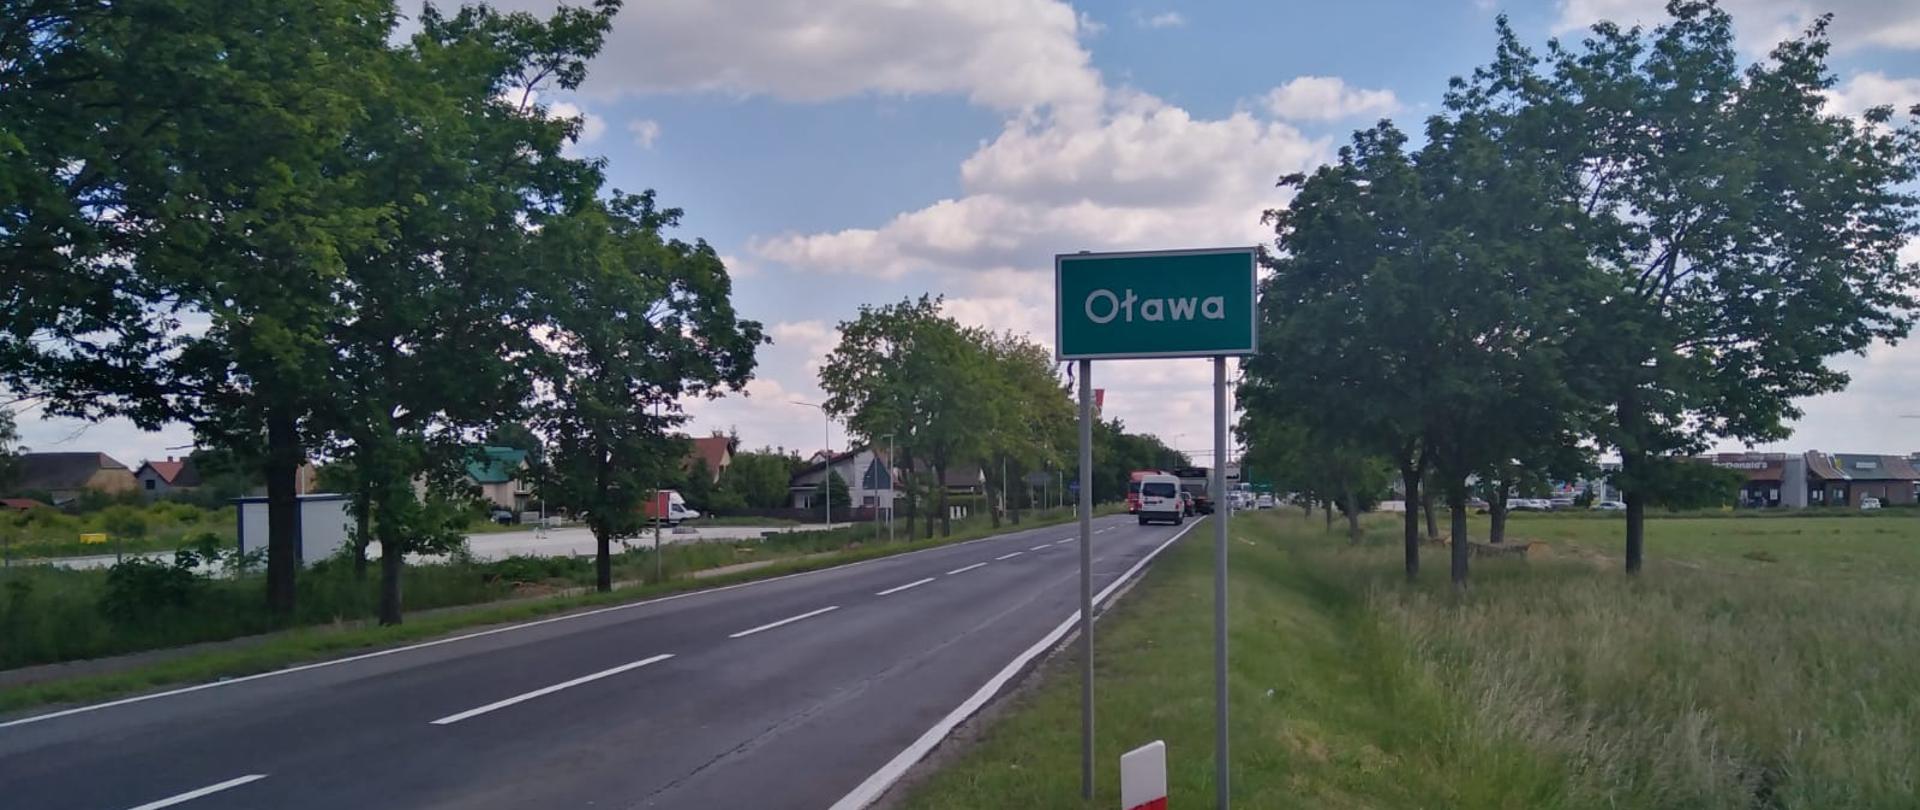 Na zdjęciu widać drogę krajową nr 94 i znak z napisem Oława